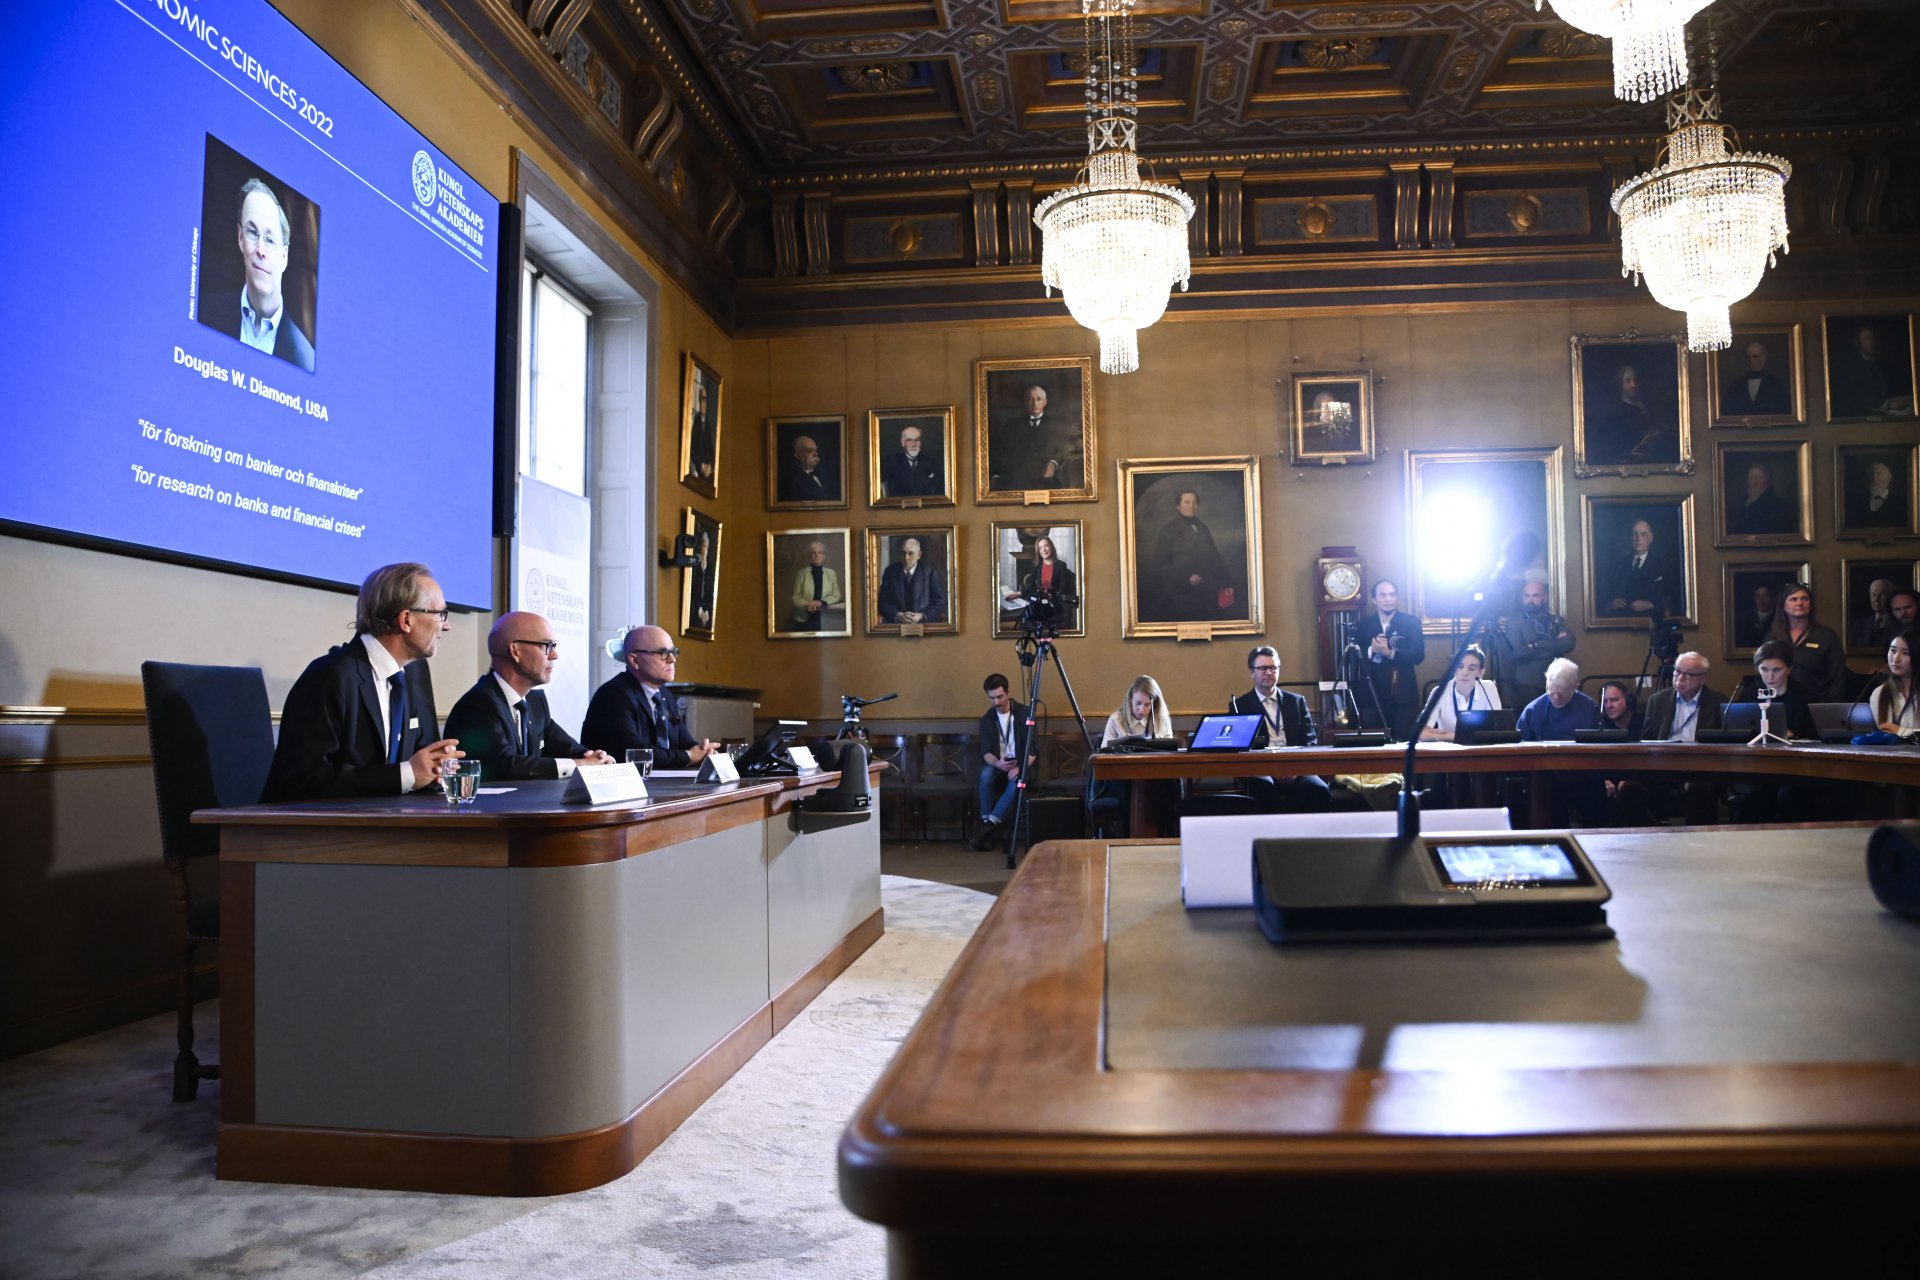 Отляво Торе Елингсен, Ханс Елегрен и Джон Хаслер, членове на Кралската шведска академия на науките, обявяват наградата за икономика в памет на Алфред Нобел за 2022 г. в Кралската шведска академия на науките, Стокхолм, Швеция, 10 октомври 2022 г.